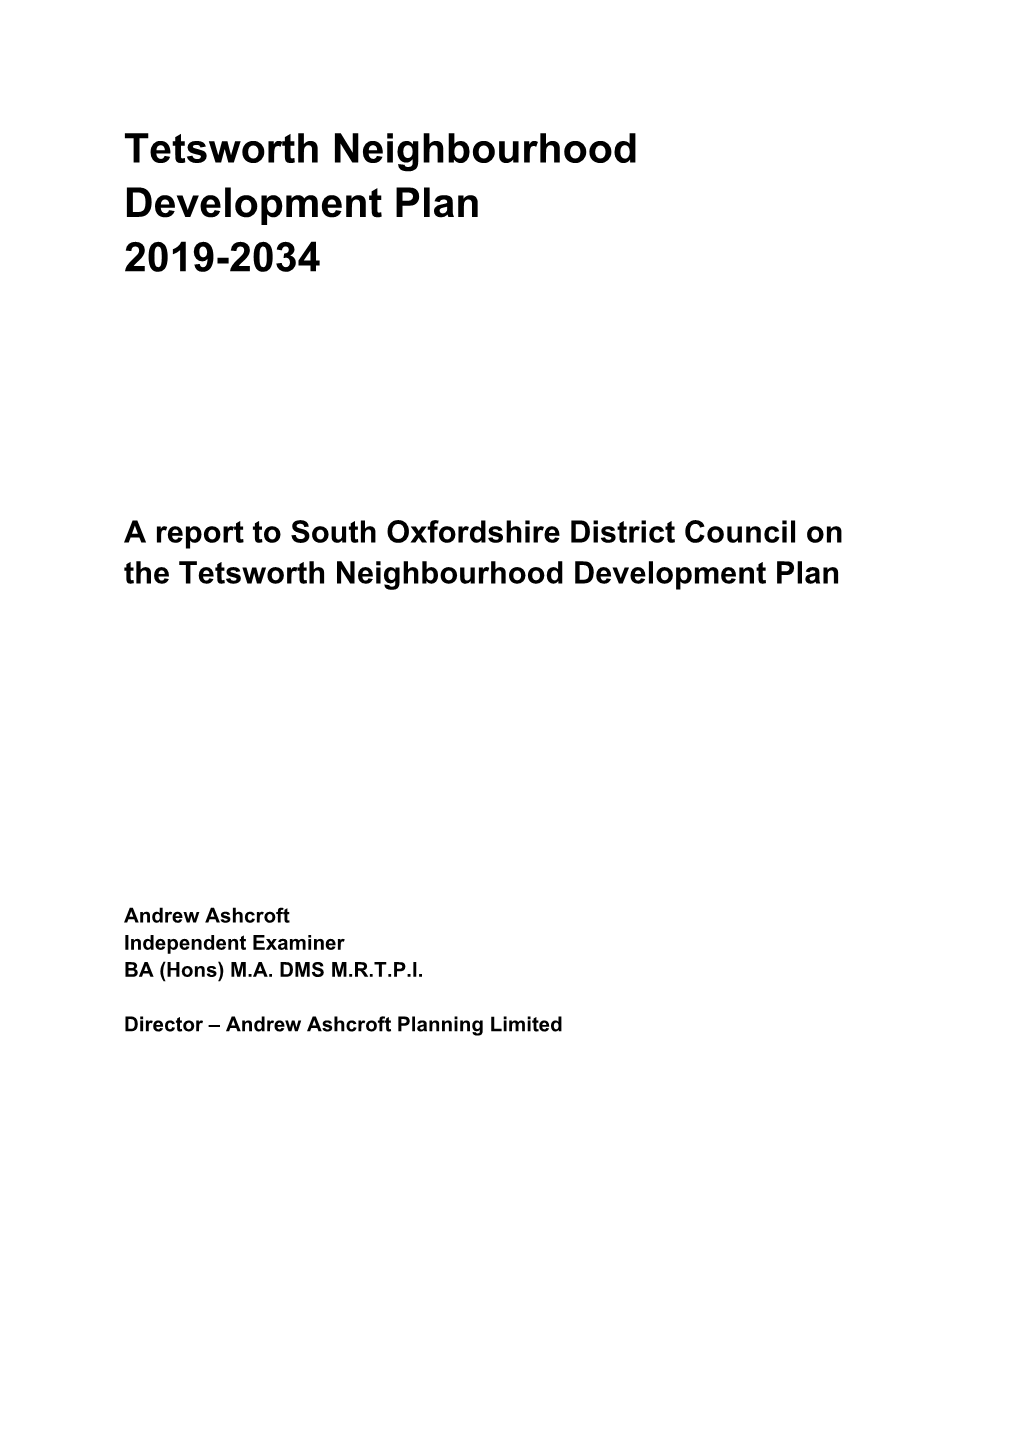 Tetsworth Neighbourhood Development Plan 2019-2034